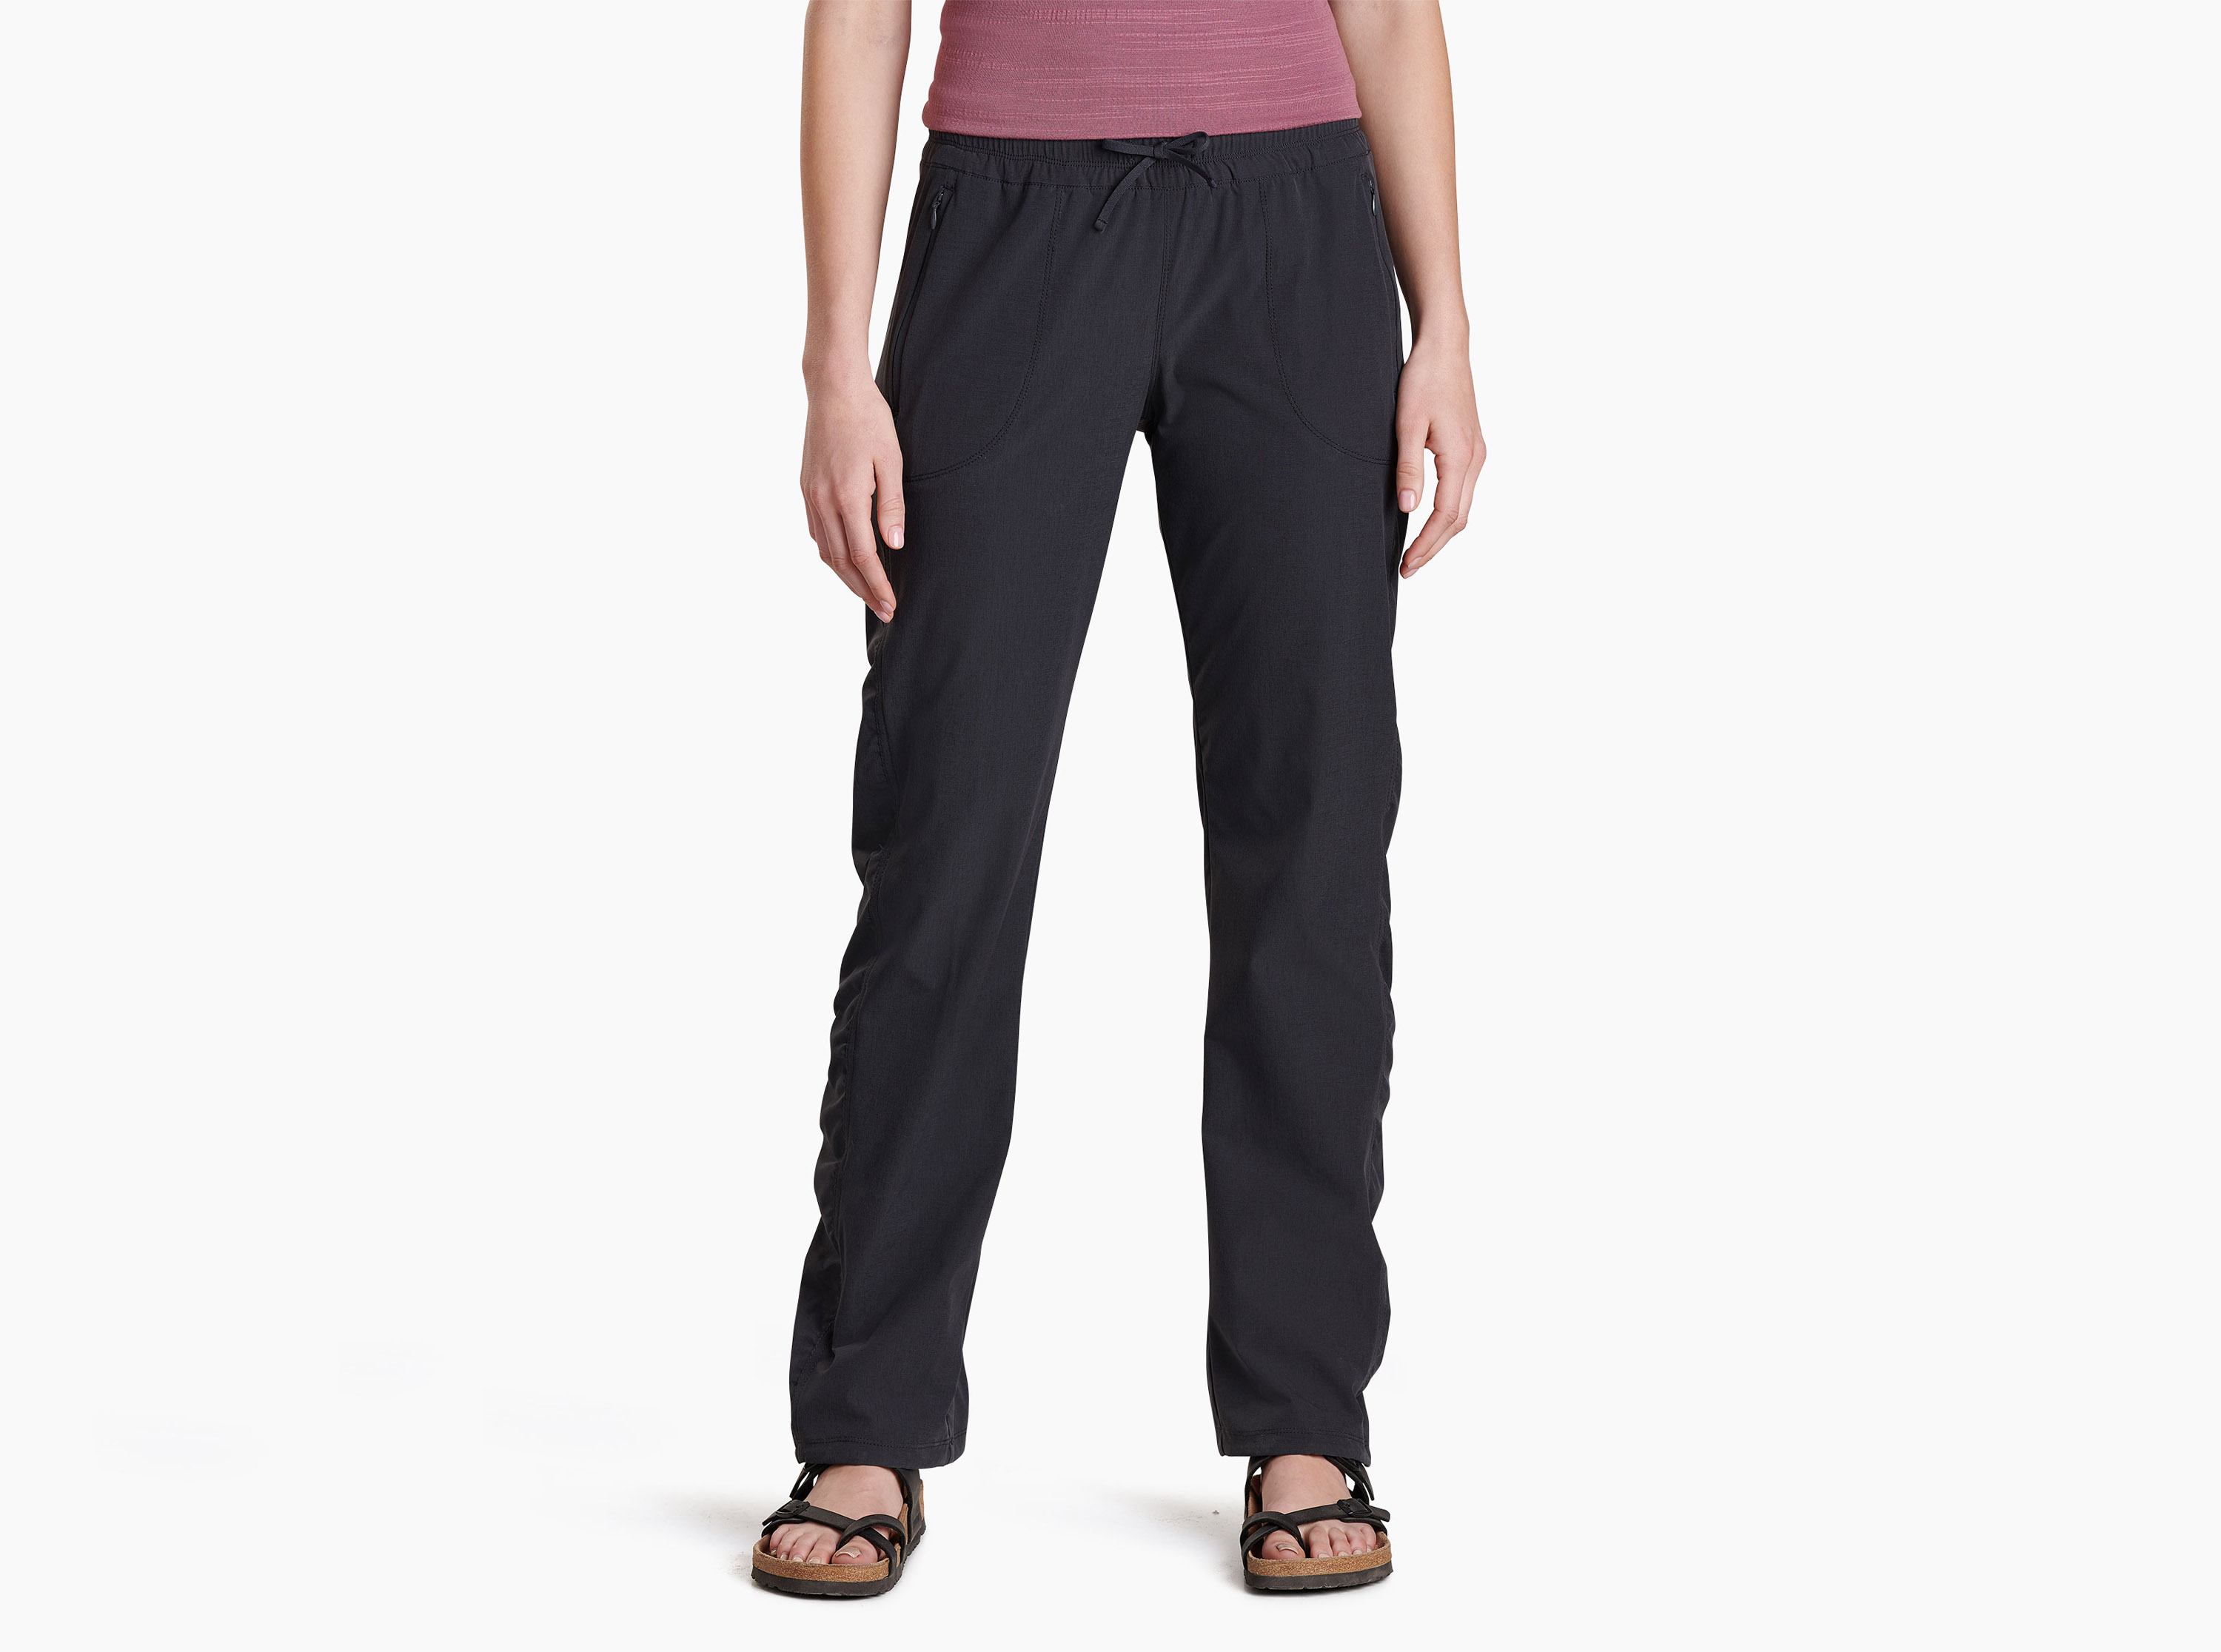 Kuhl W's Free Range Pants. - Women's Casual Pants - Size 8